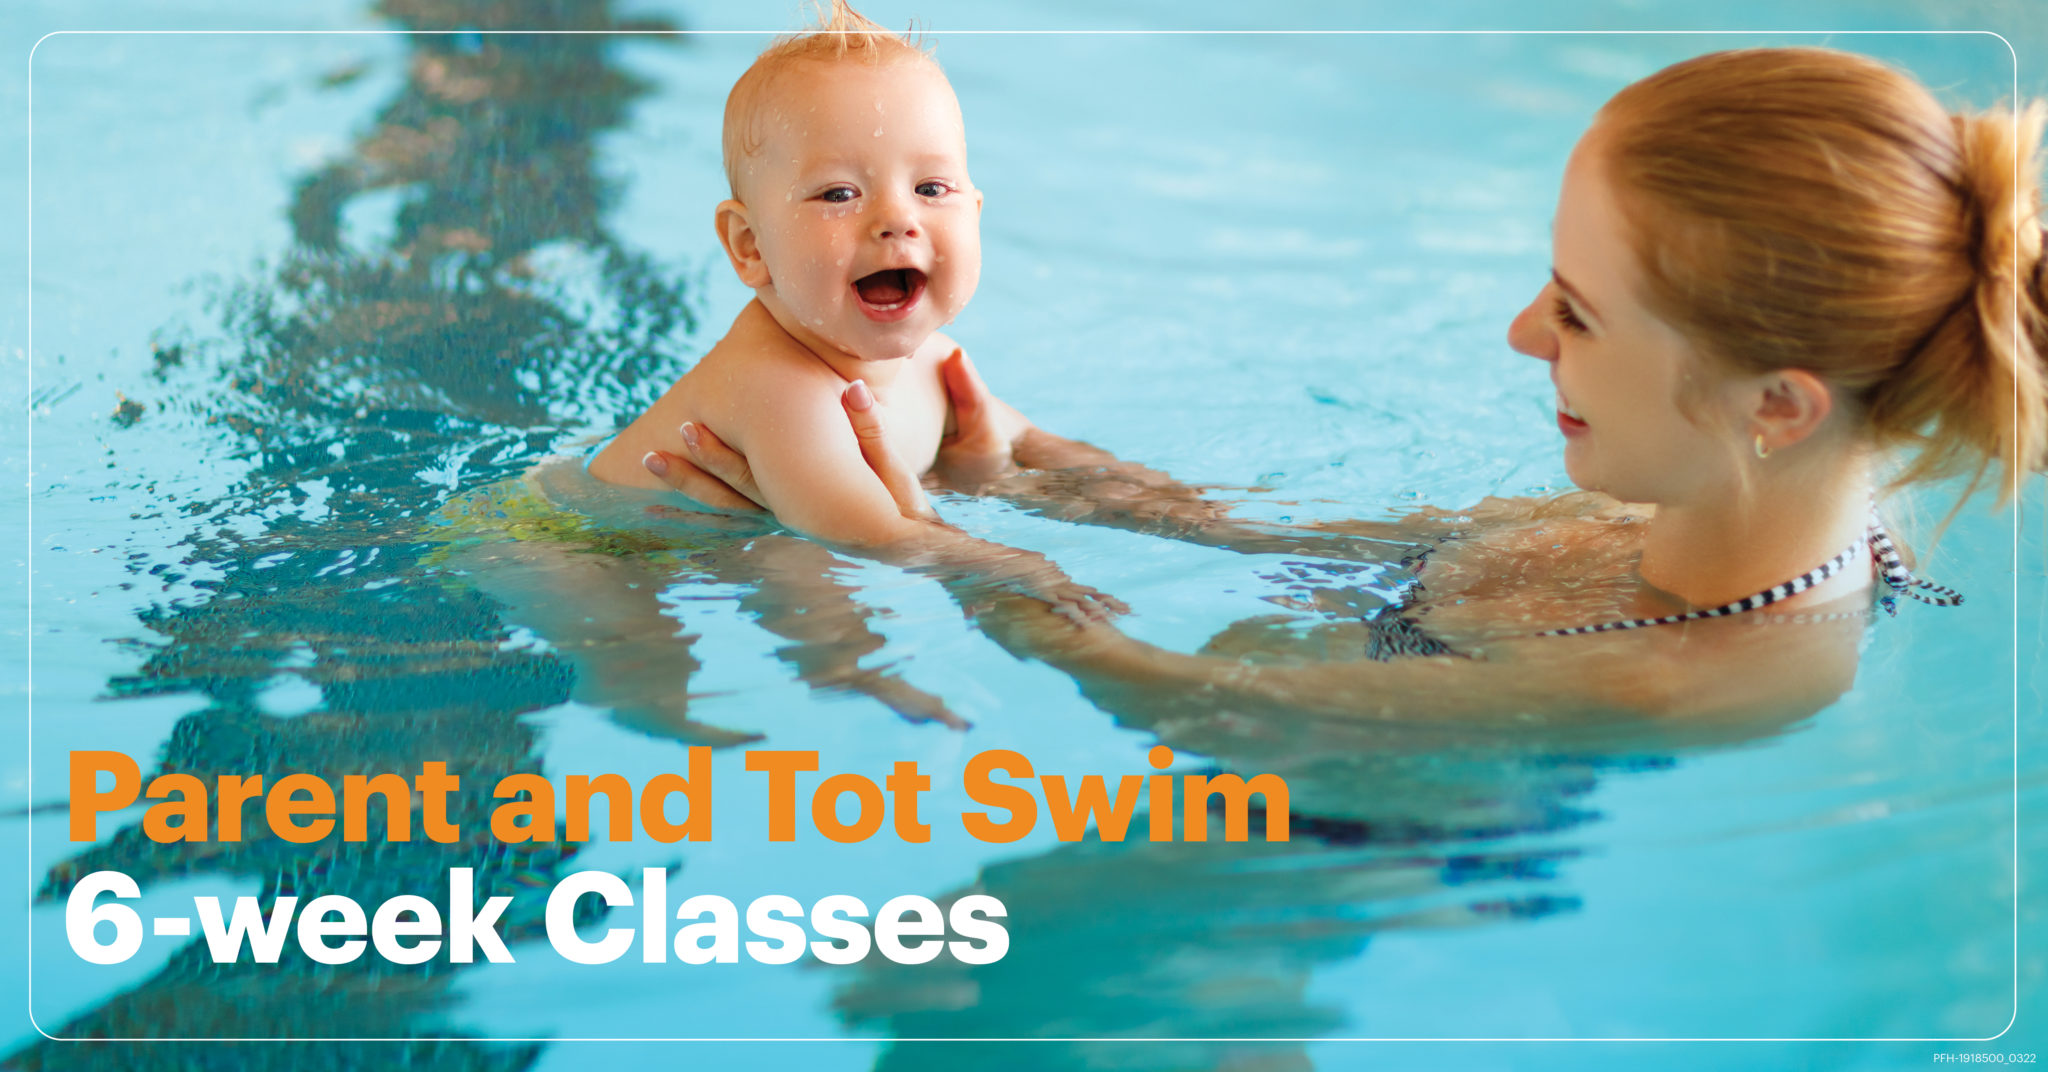 Parent and Tot Swim 6-week Classes